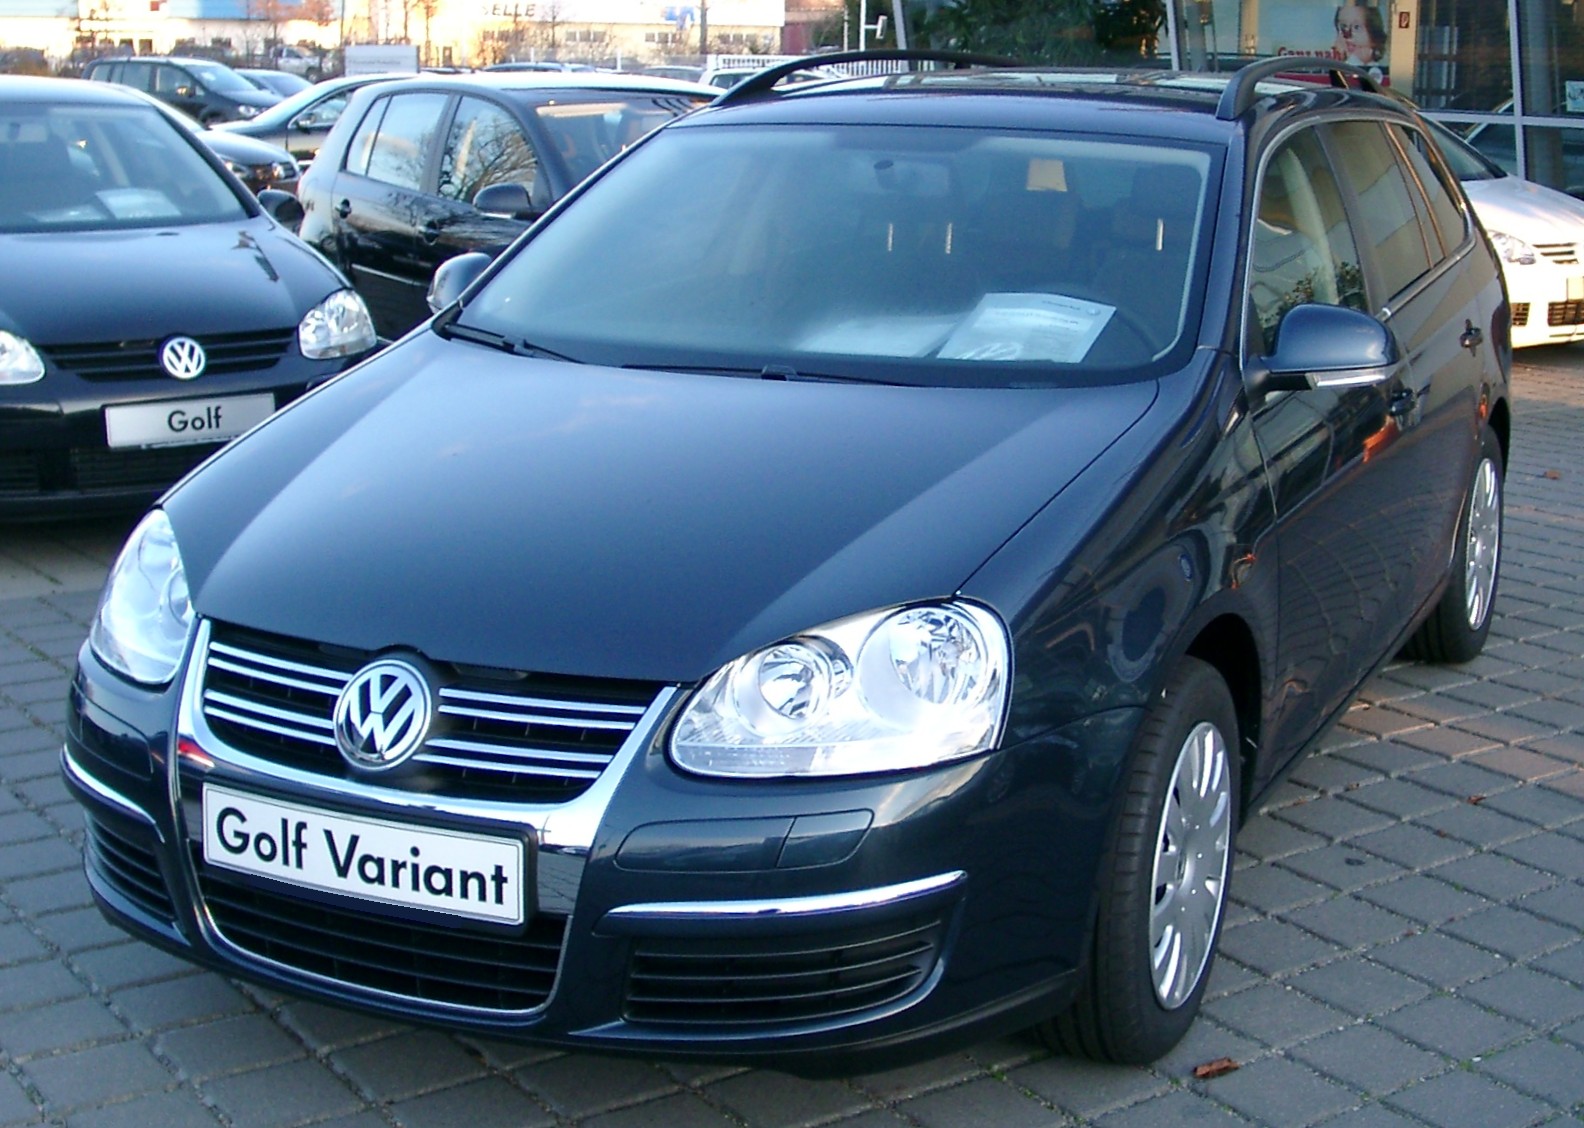 File:VW Golf V Variant4 front 20071215.jpg - Wikimedia Commons